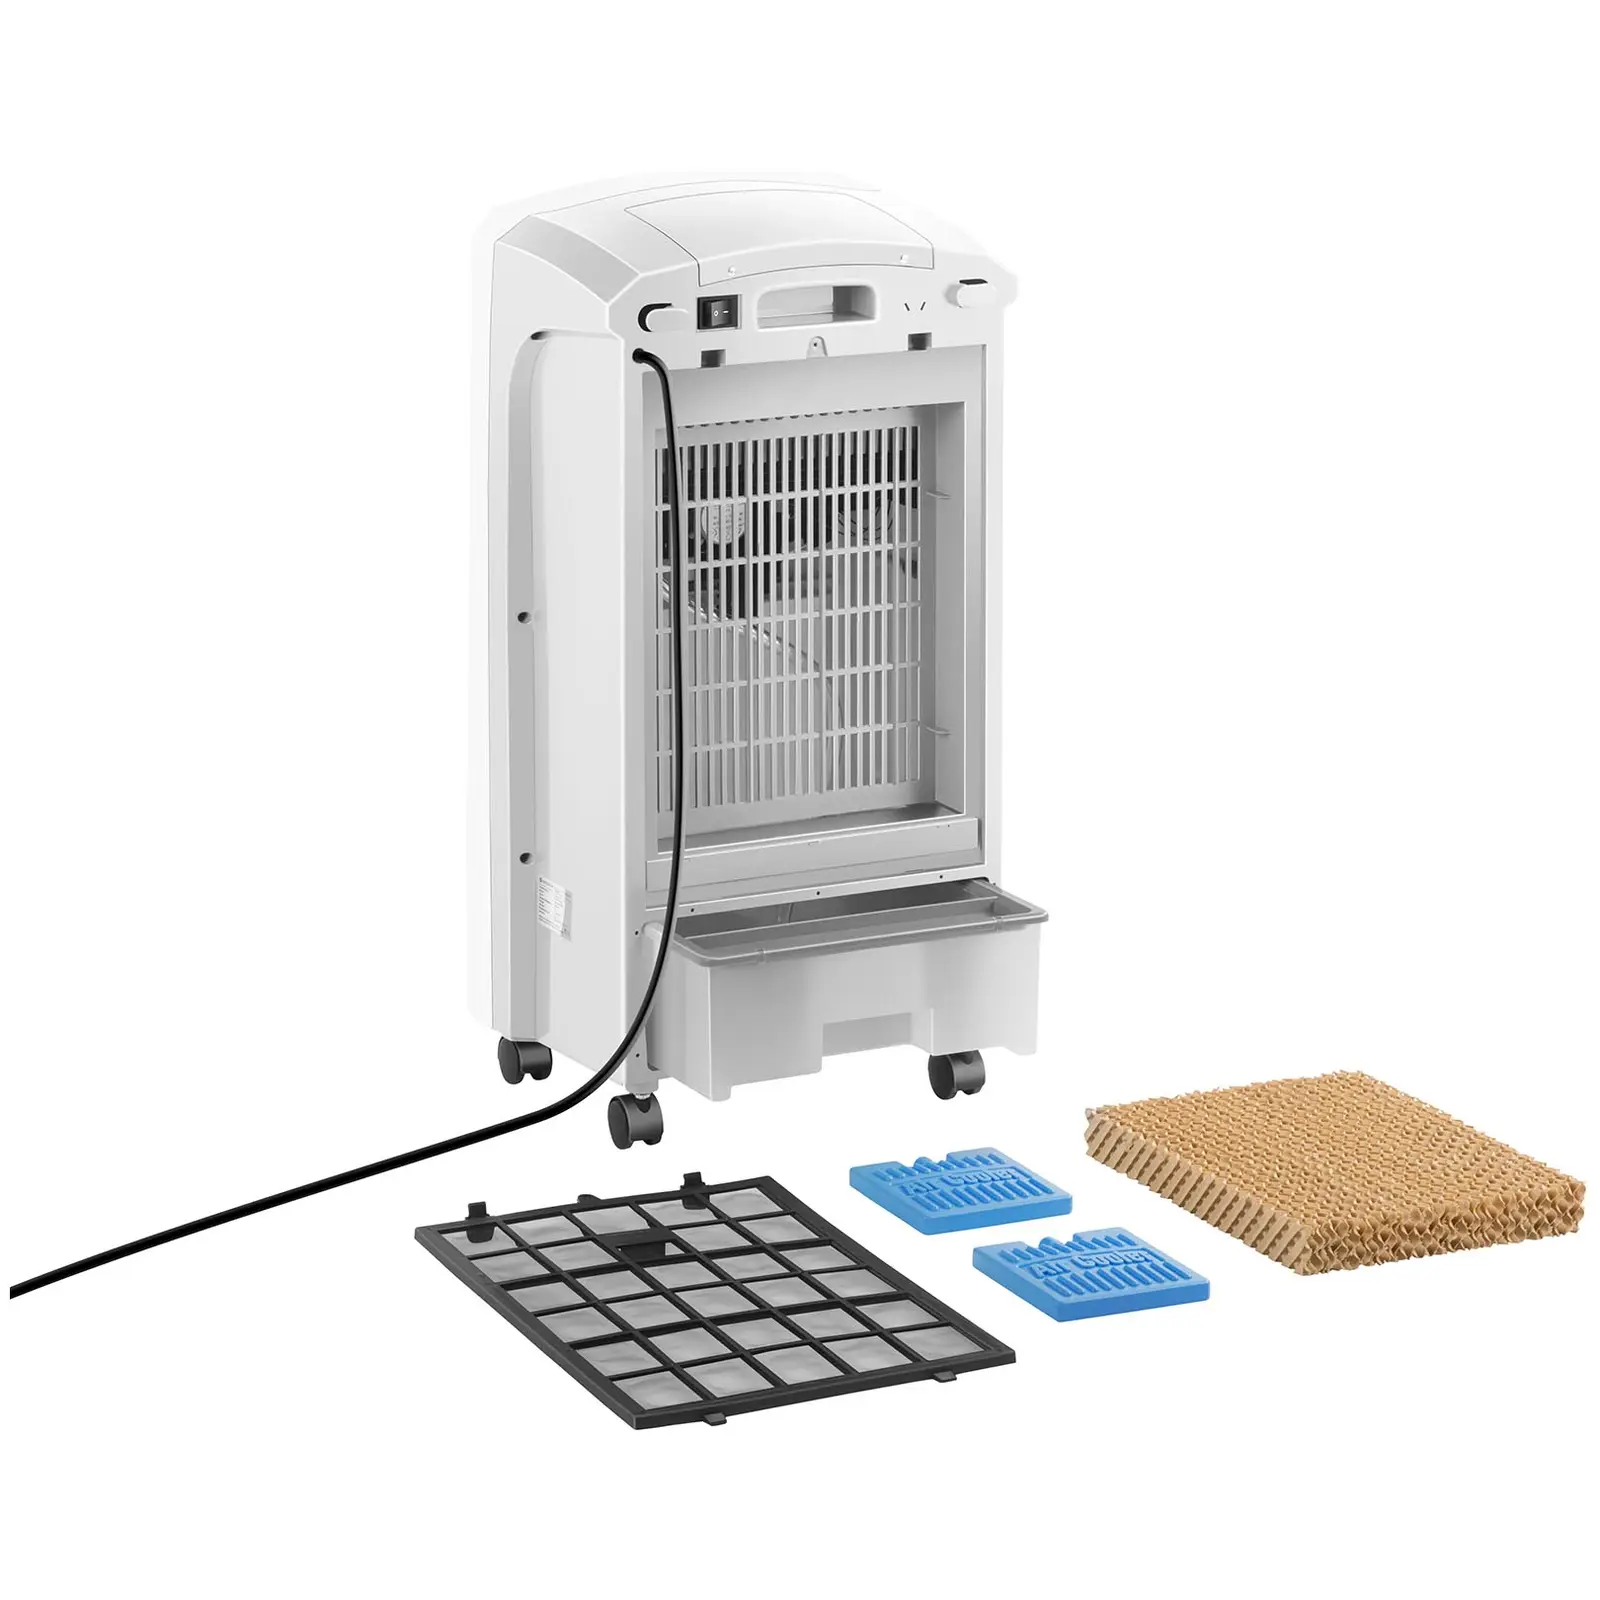 Raffrescatore d'aria con funzione riscaldamento - 5 in 1 - Serbatoio acqua 6 L